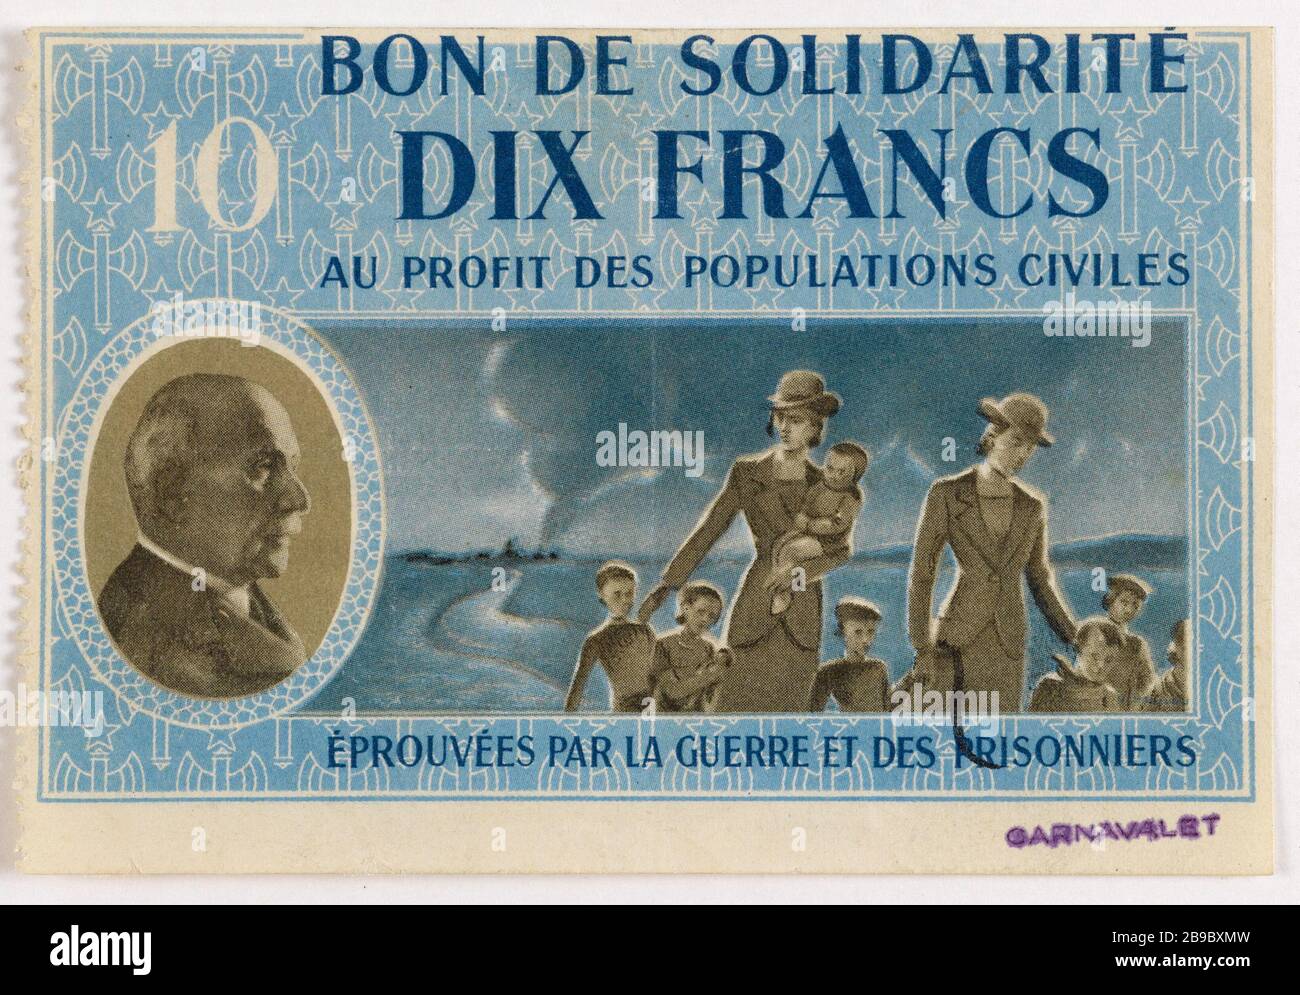 Good Solidarity 10 francs department of Seine 1940. Anonyme. Bon de solidarité de 10 francs, département de la Seine, 1940. Typographie. Paris, musée Carnavalet. Stock Photo